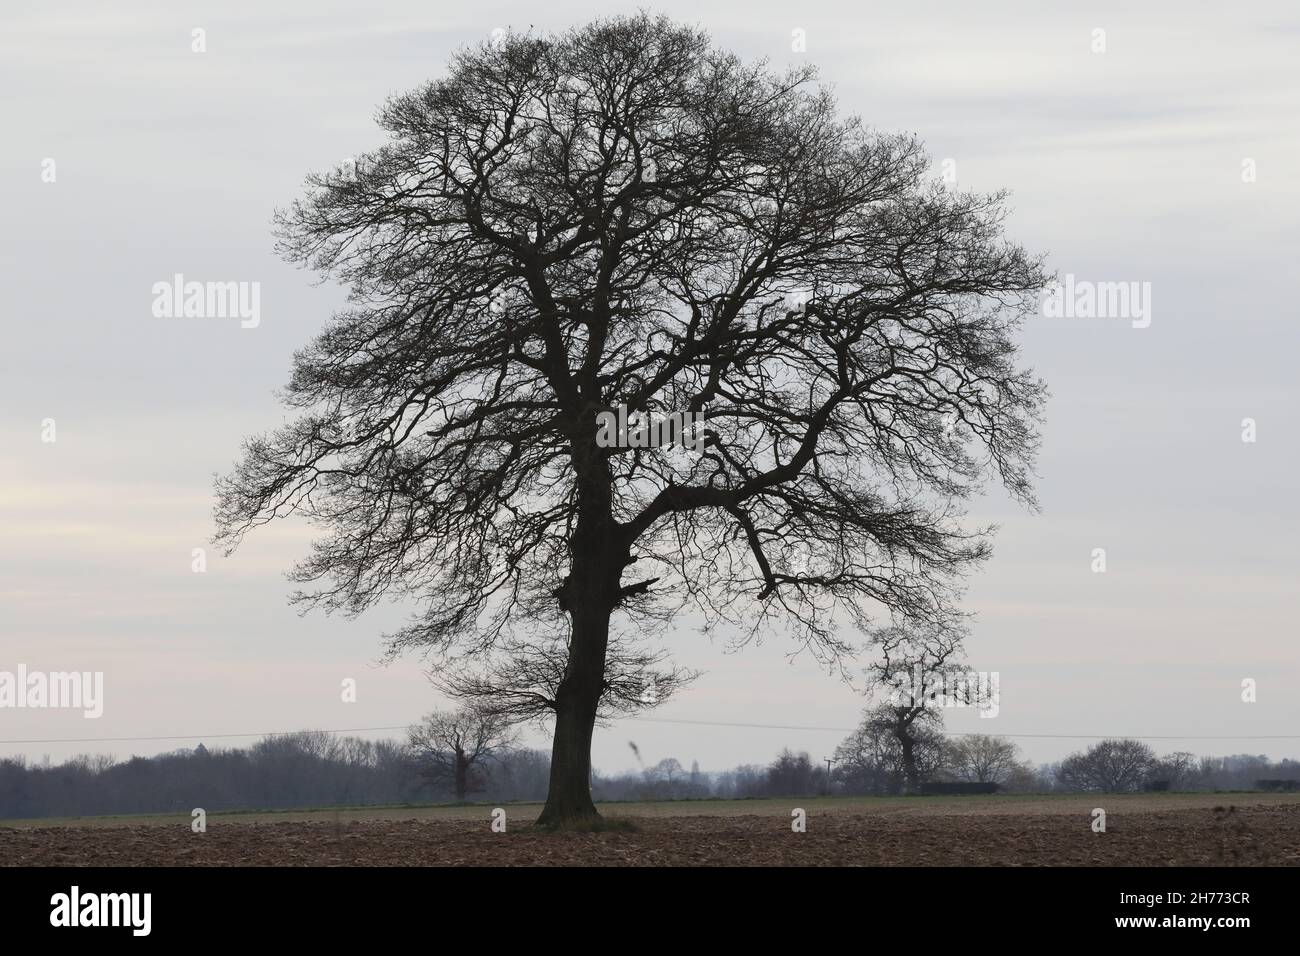 Quercia inglese (Quercus robur). Singolo campione isolato, con altri in fondo distante in silhouette, inverno. Una volta in hedgerows ora è andato. Foto Stock